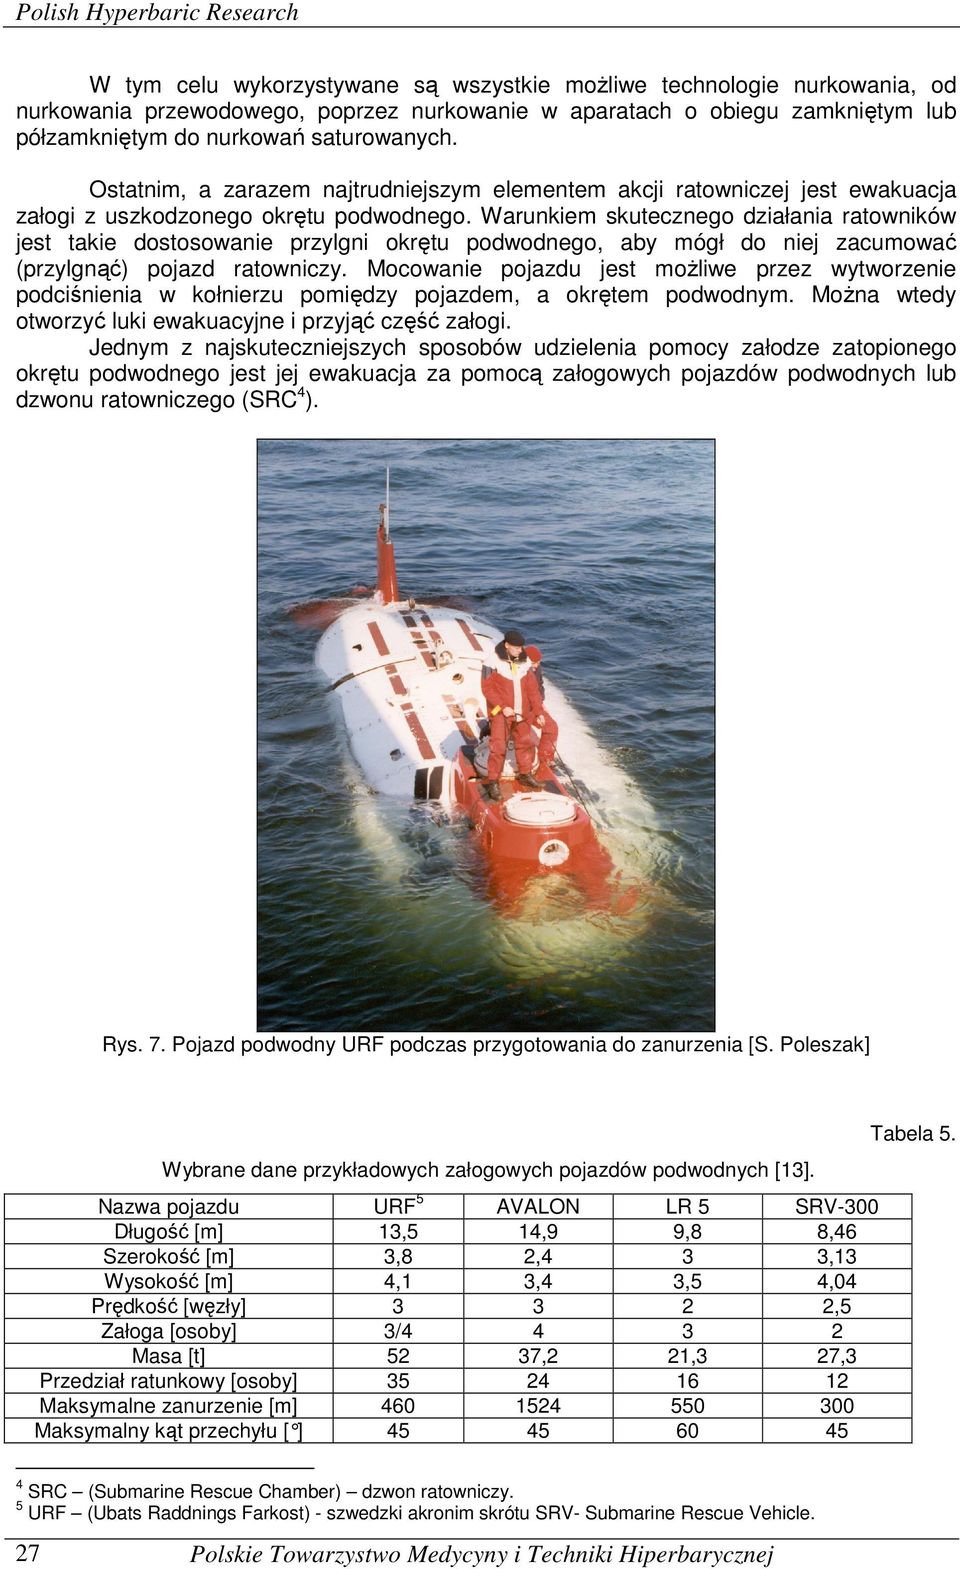 Warunkiem skutecznego działania ratowników jest takie dostosowanie przylgni okrętu podwodnego, aby mógł do niej zacumować (przylgnąć) pojazd ratowniczy.